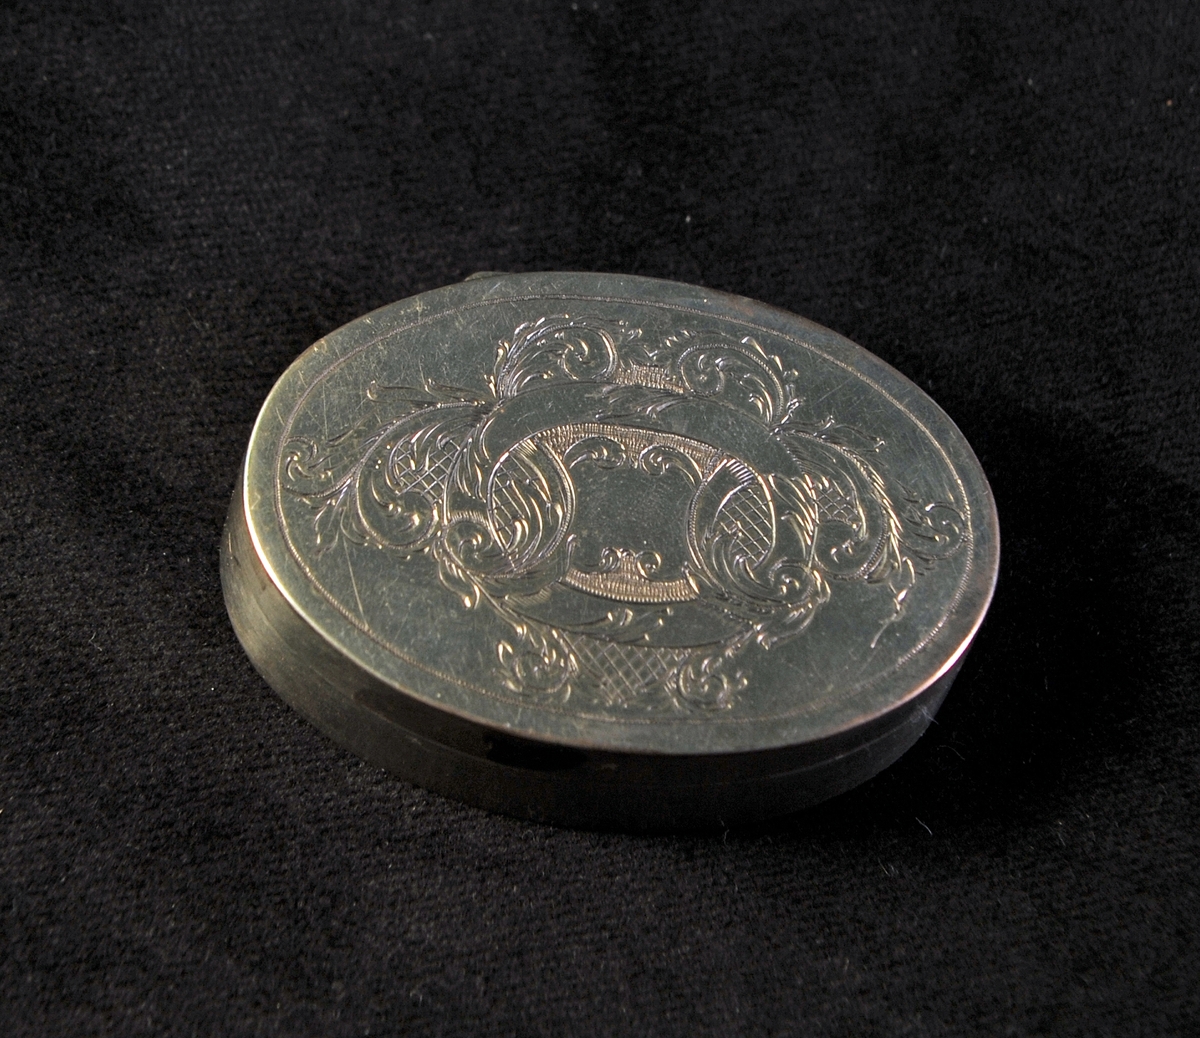 Oval dosa av silver. Graverad dekor i nyrokoko på locket. I botten ingraverade initialer: "J.C.J.S.". Invändigt förgylld med spegel i locket. Stämplad i insida i botten.